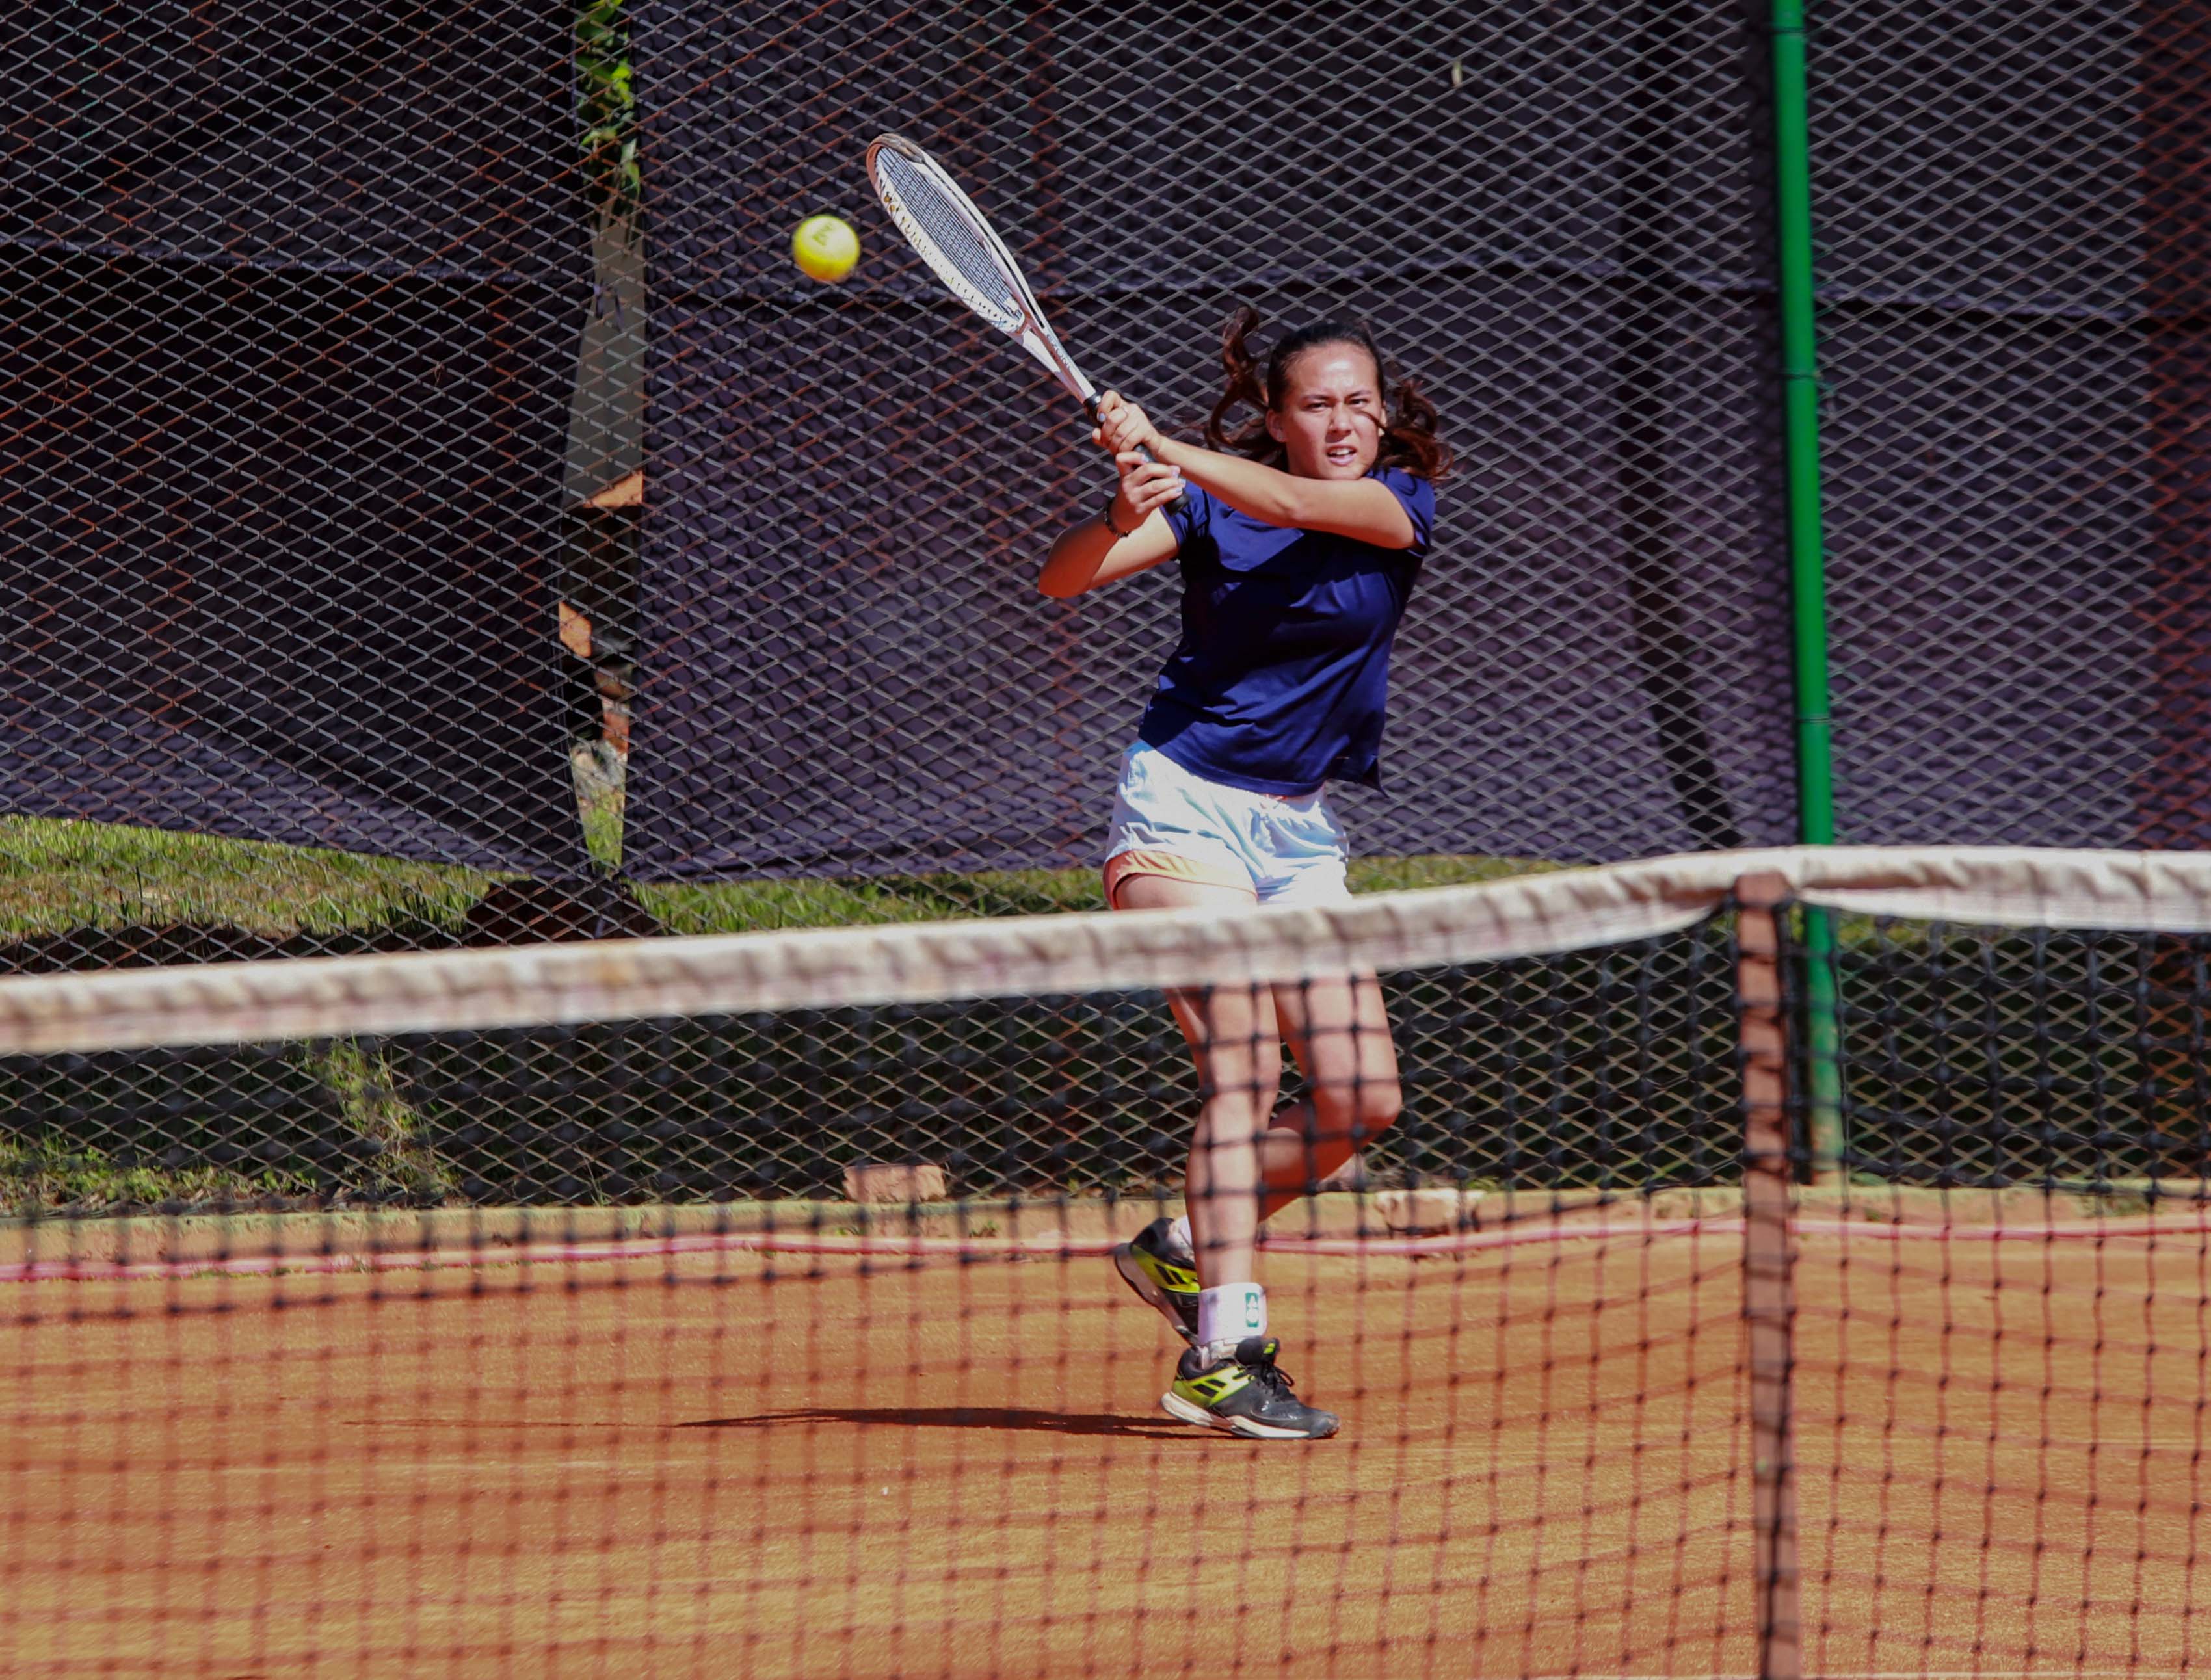 नवौं राष्ट्रिय : टेनिस महिला डबल्सतर्फ बागमती र आर्मी फाइनलमा